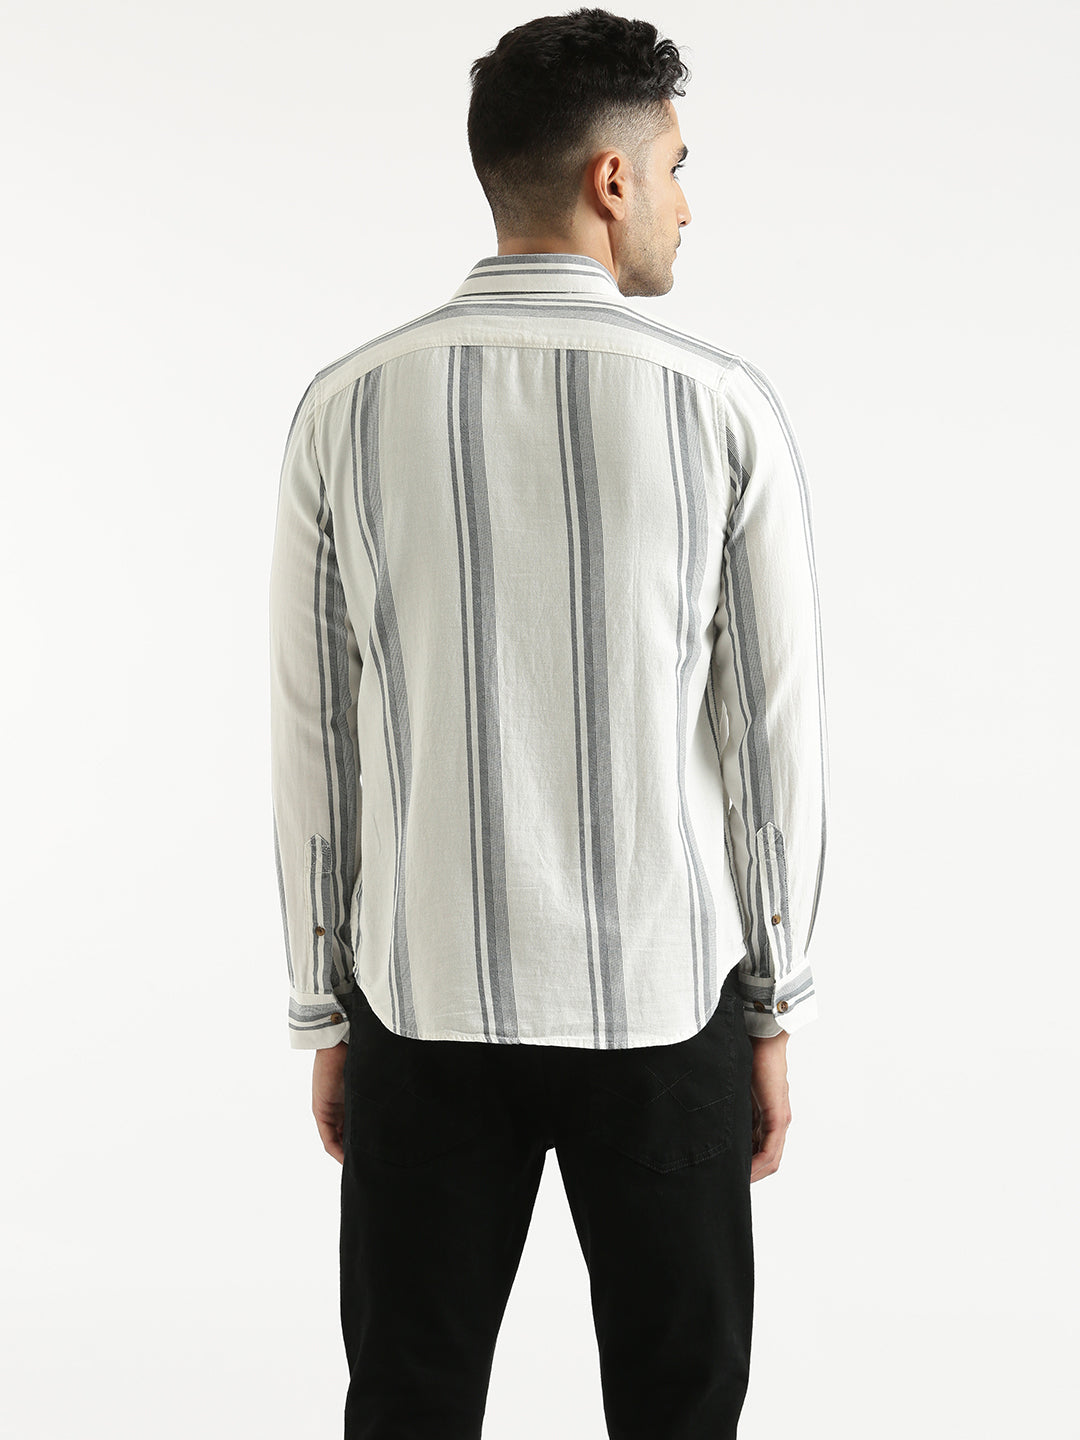 Monochrome Stripe Pattern Shirt